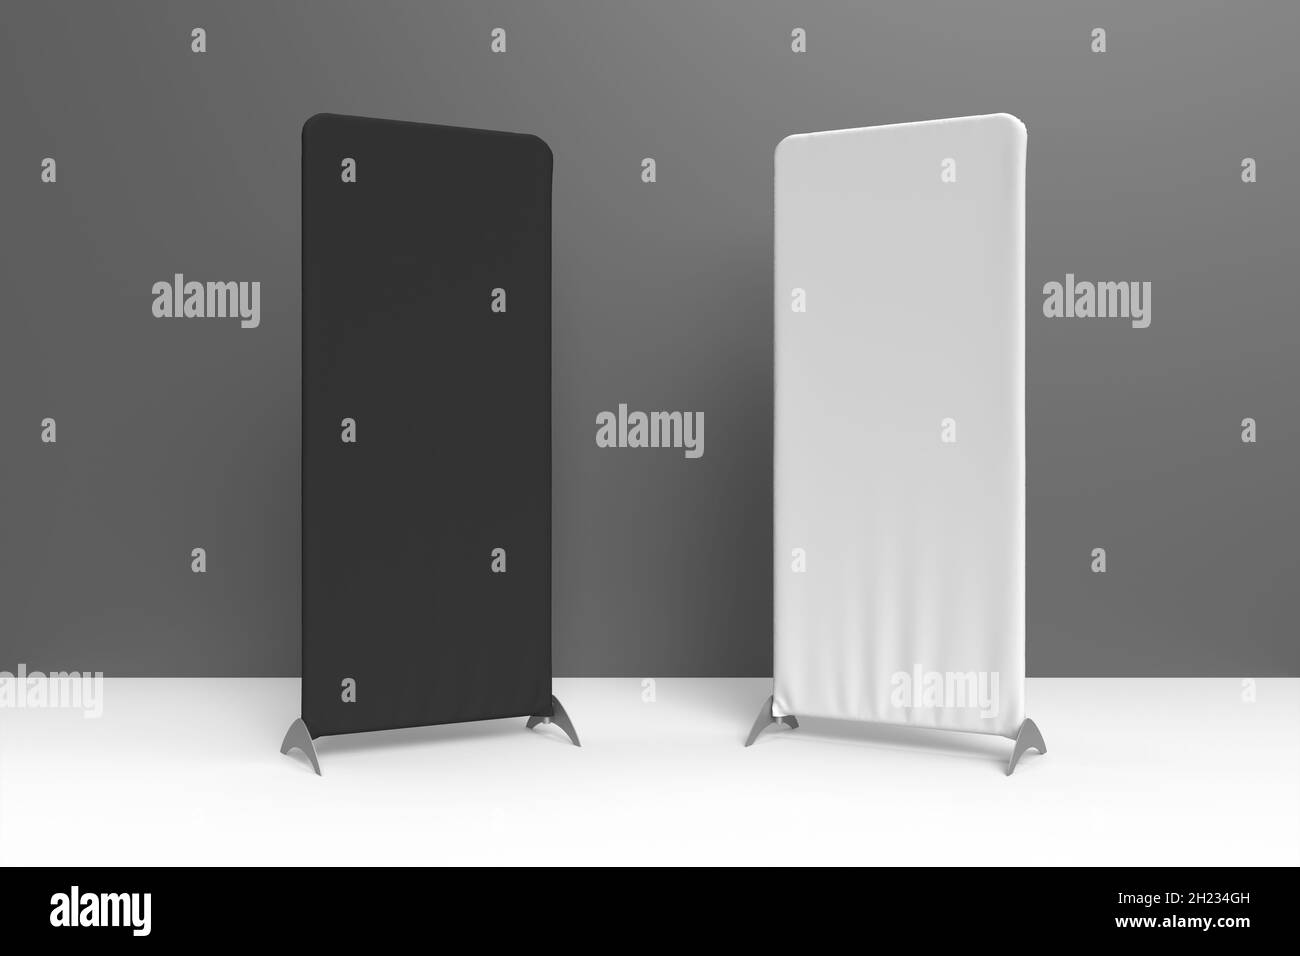 Un supporto per display in tessuto verticale bianco e nero posto su una superficie bianca davanti a una parete grigia. Illustrazione con rendering 3D per mockup e grafica re Foto Stock